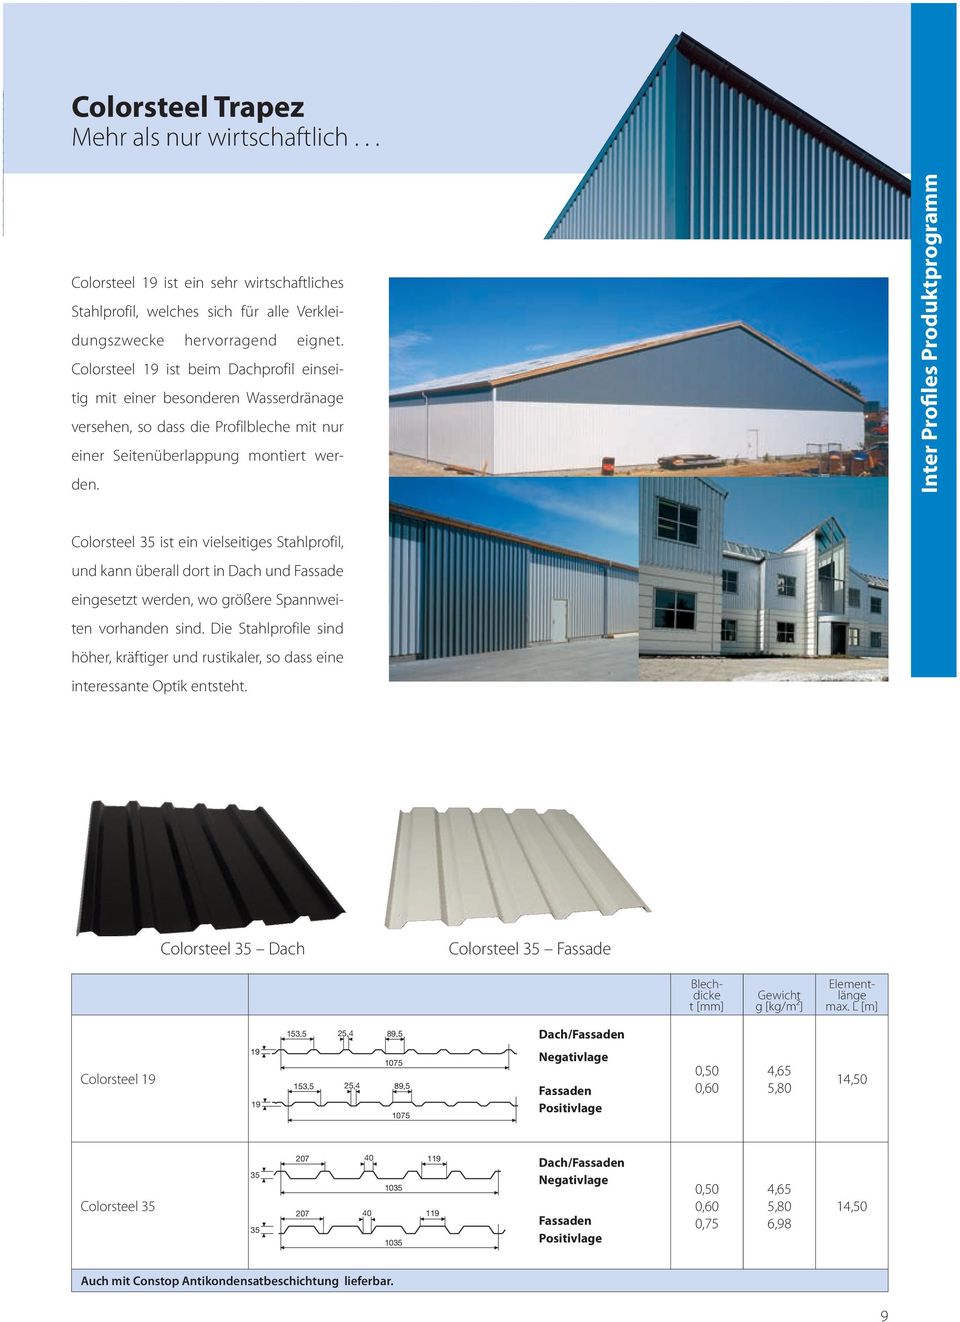 Inter Profiles Produktprogramm Colorsteel 35 ist ein vielseitiges Stahlprofil, und kann überall dort in Dach und Fassade eingesetzt werden, wo größere Spannweiten vorhanden sind.